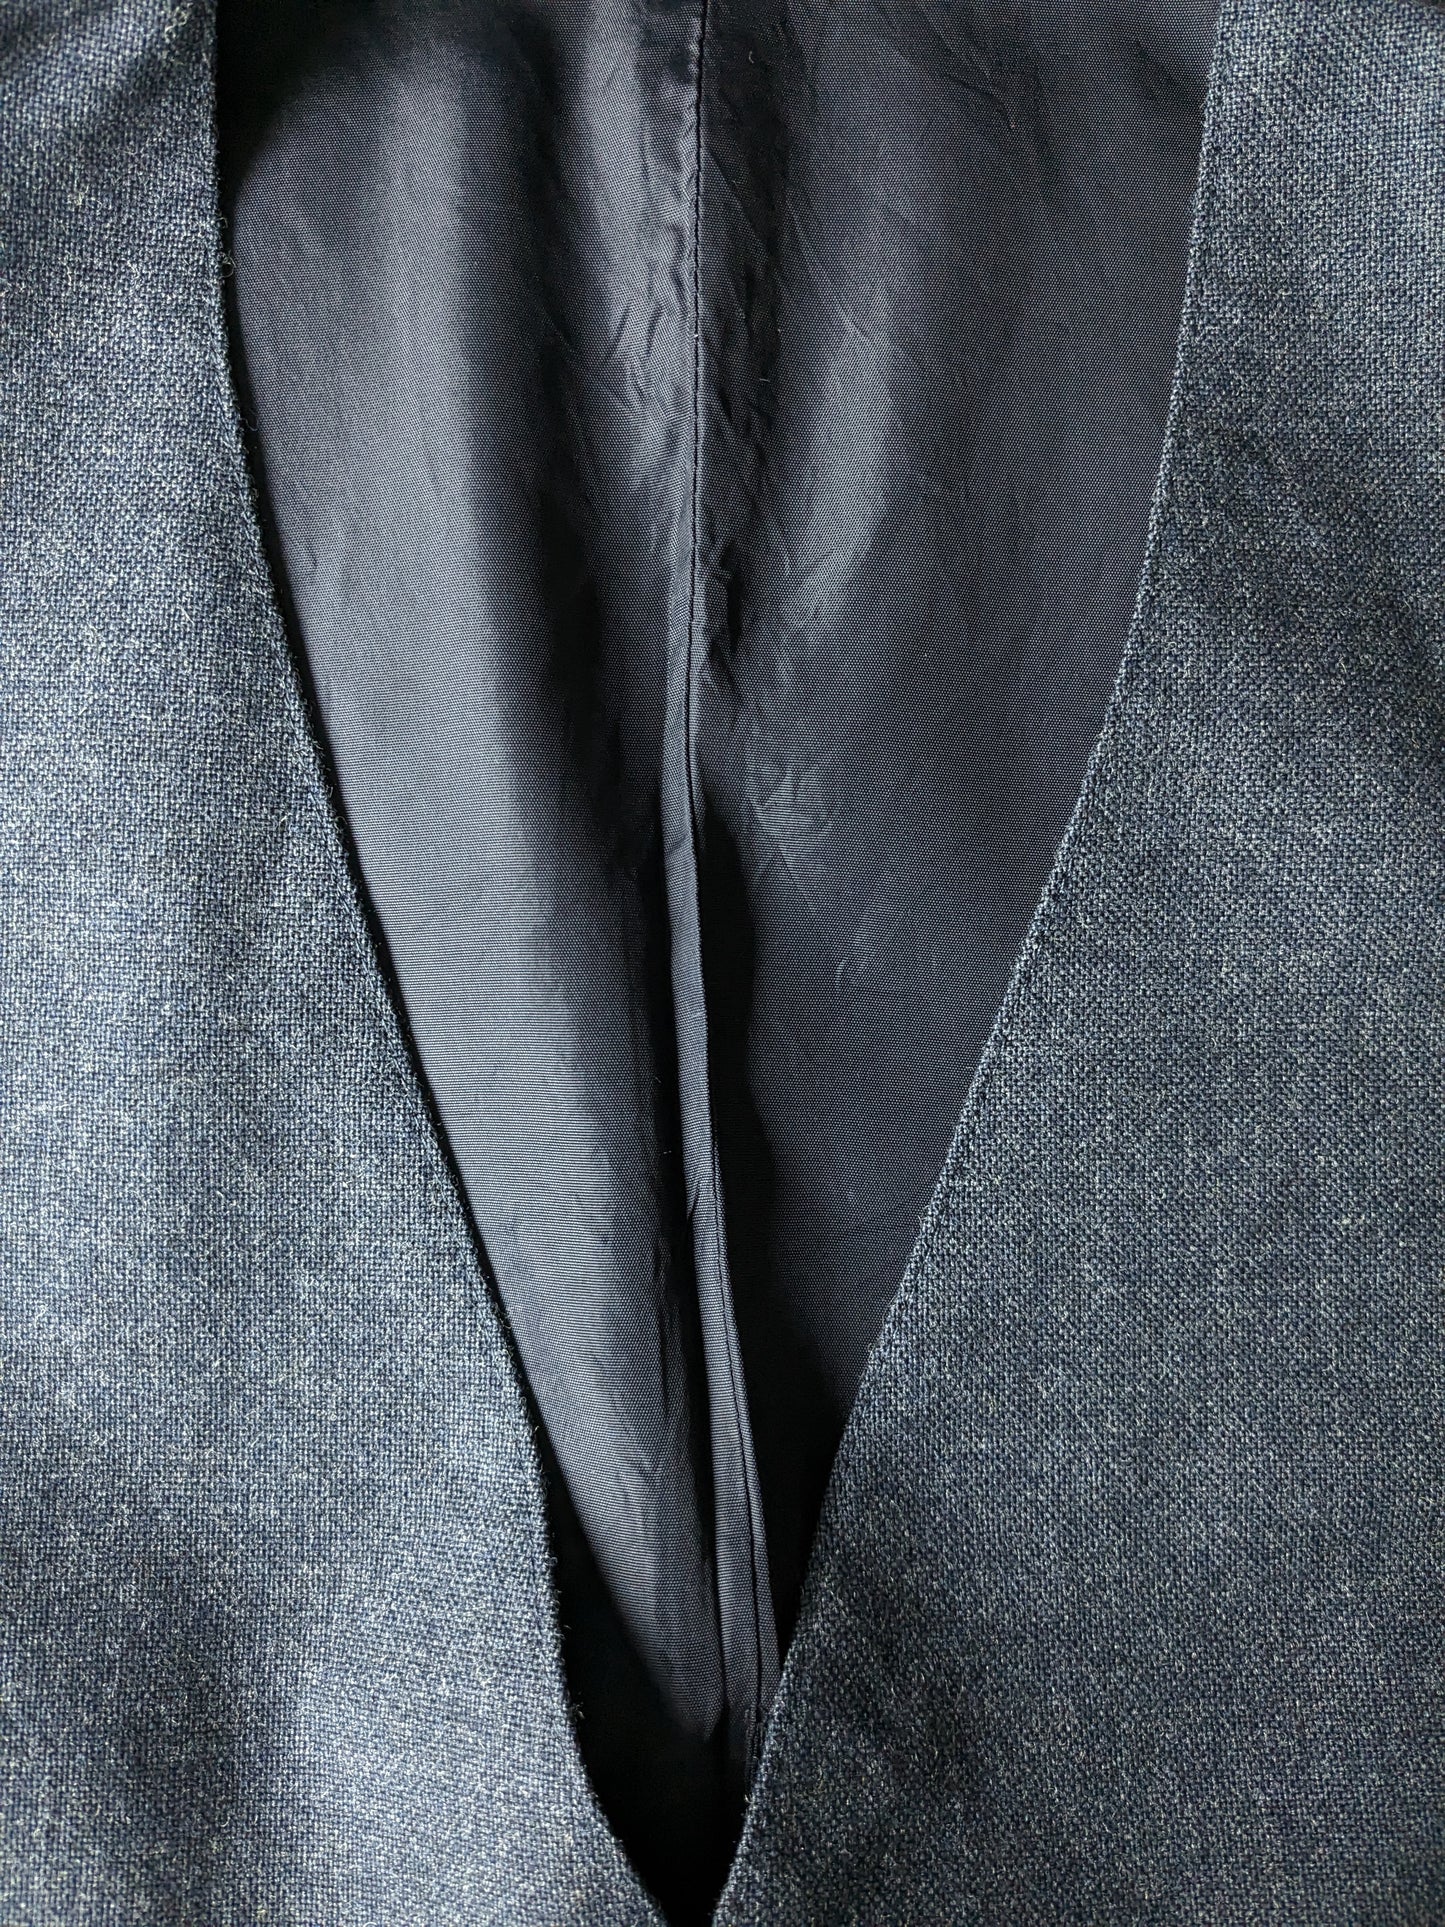 Panciotto. Motivo blu grigio scuro. Taglia 54/L.